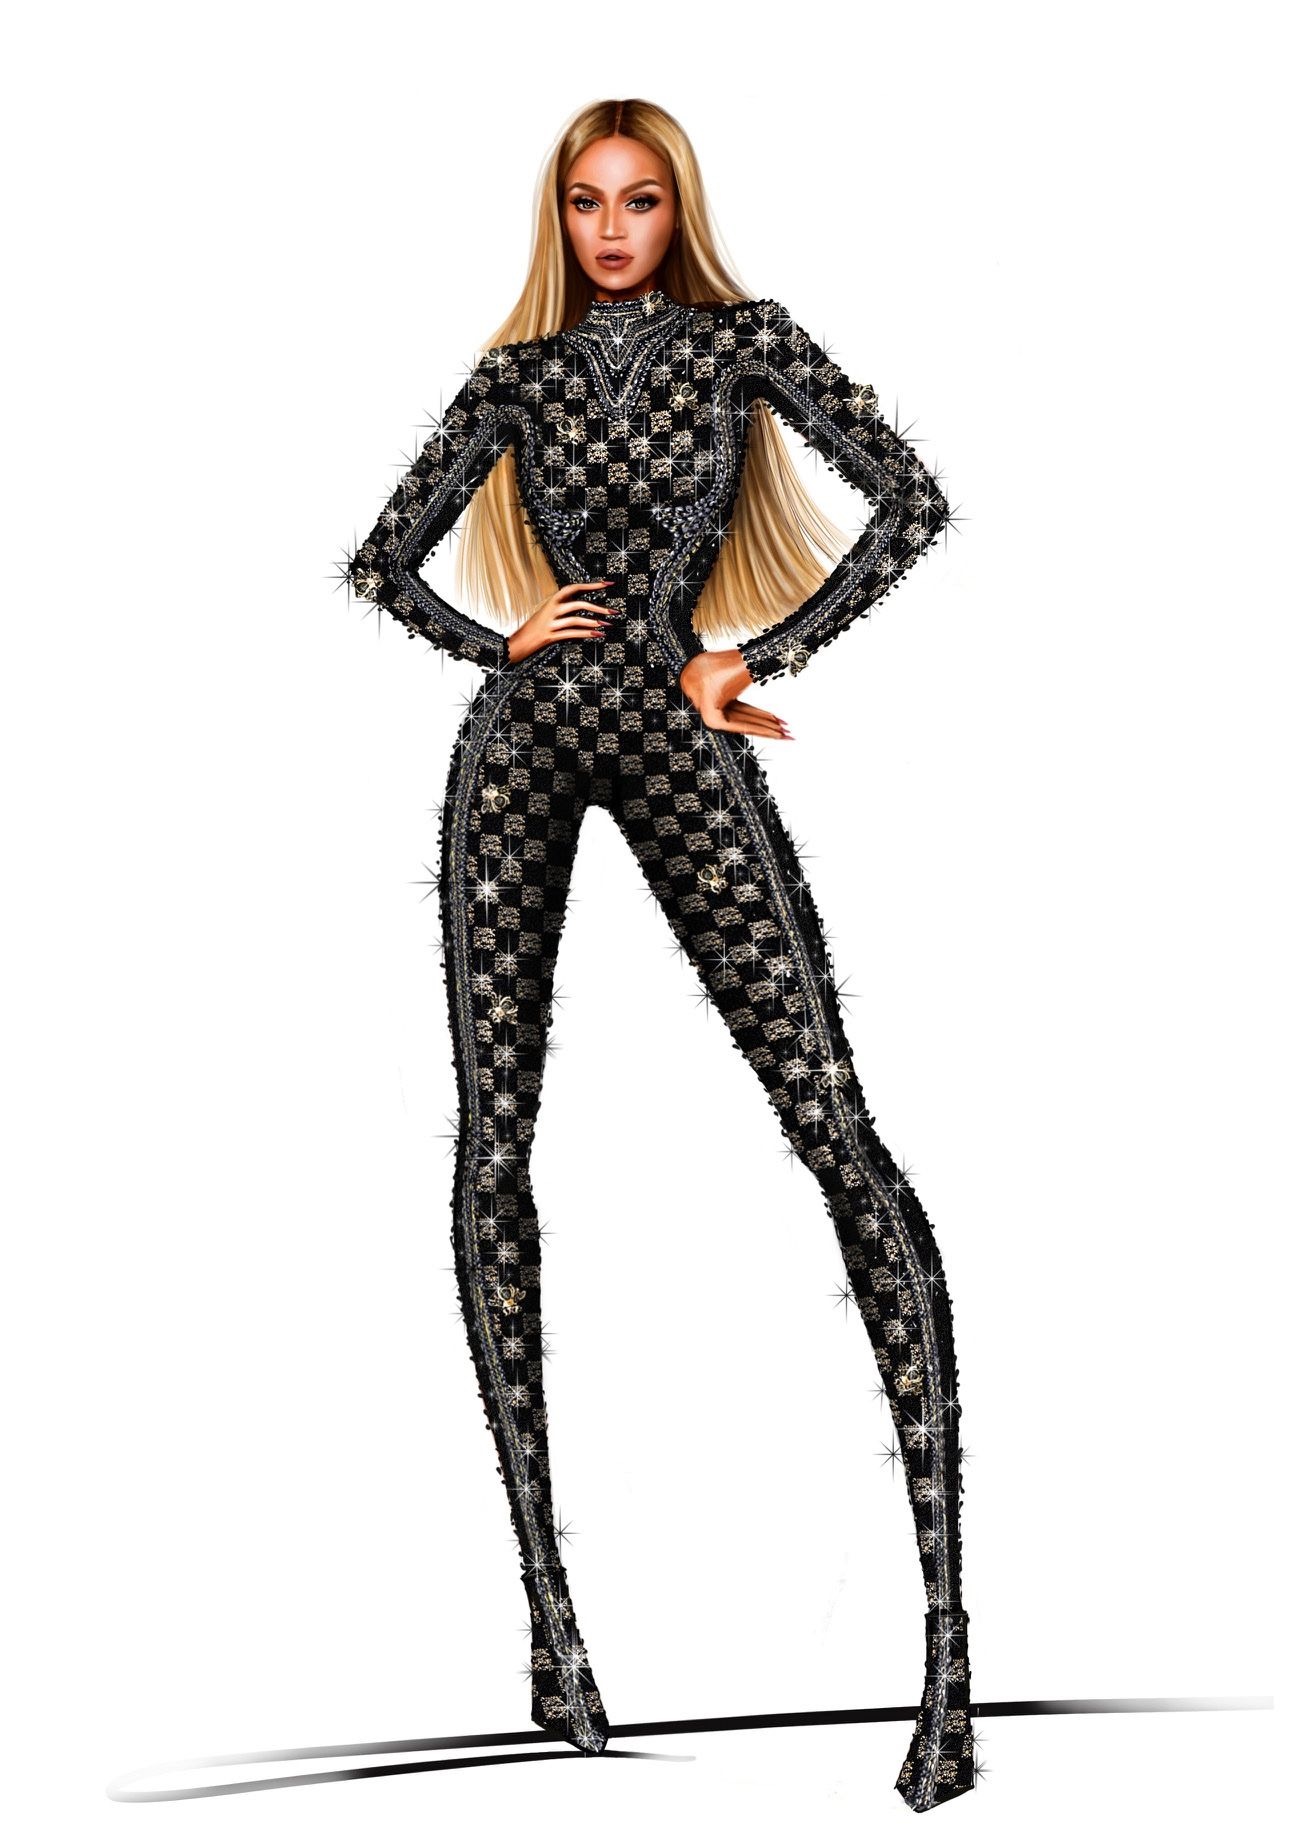 LOUIS VUITTON 释出 Beyoncé 巡演定制舞台服装